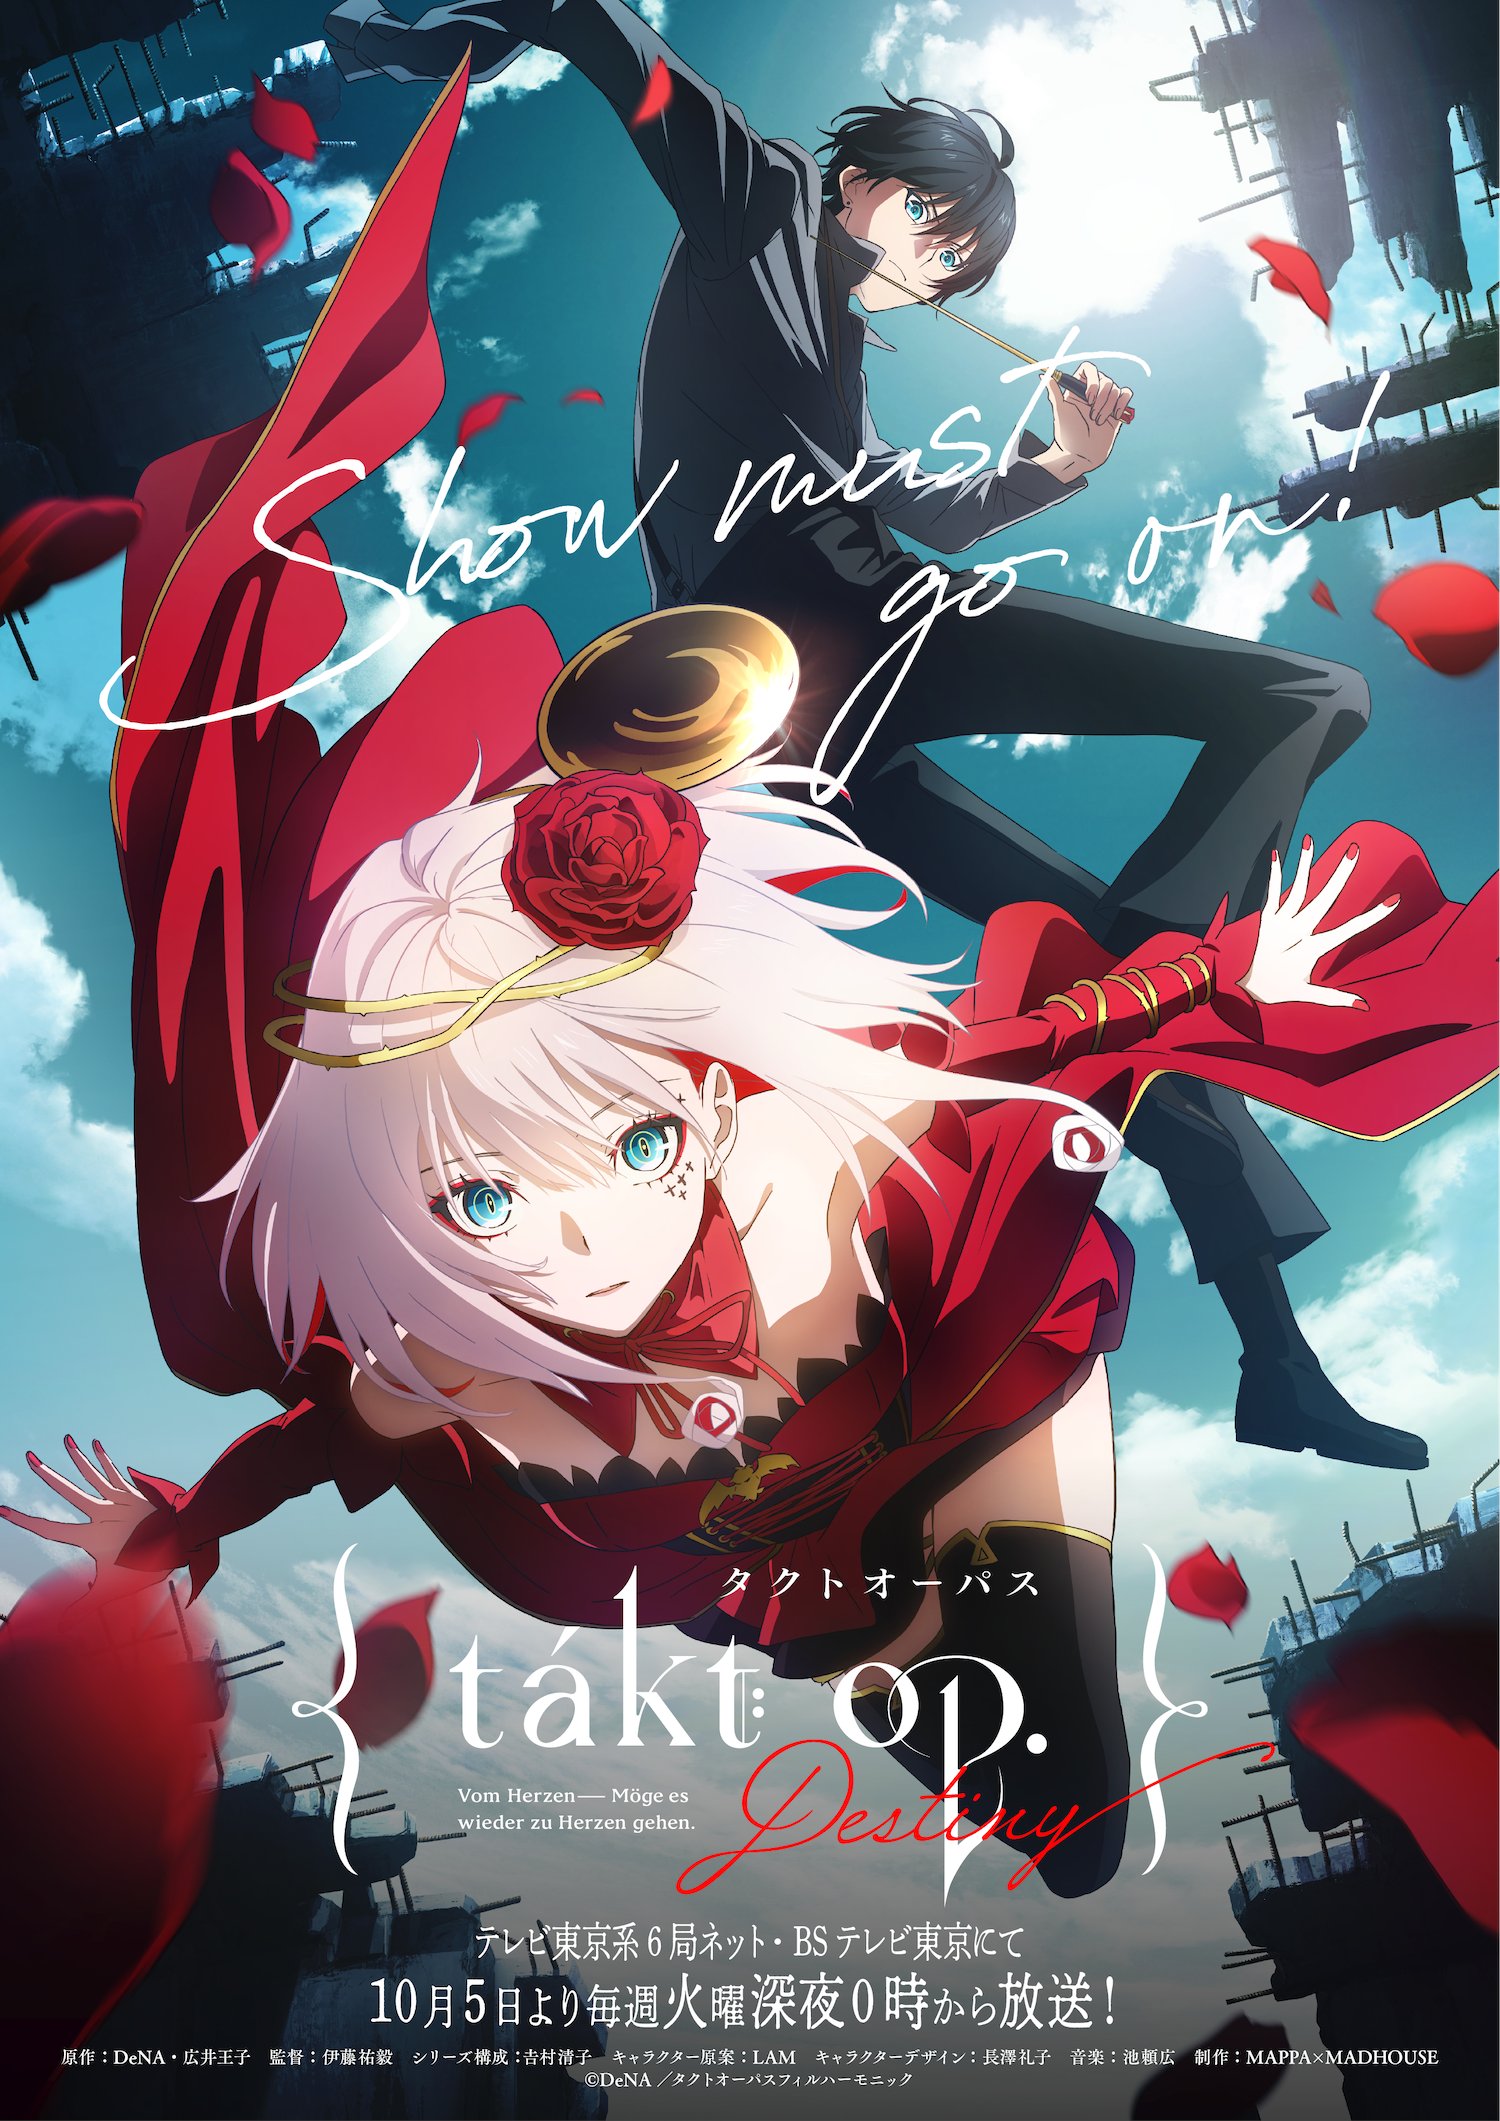 Banner Phim Takt Op. Destiny -タクトオーパス, Hepburn : Takuto Oopasu ()